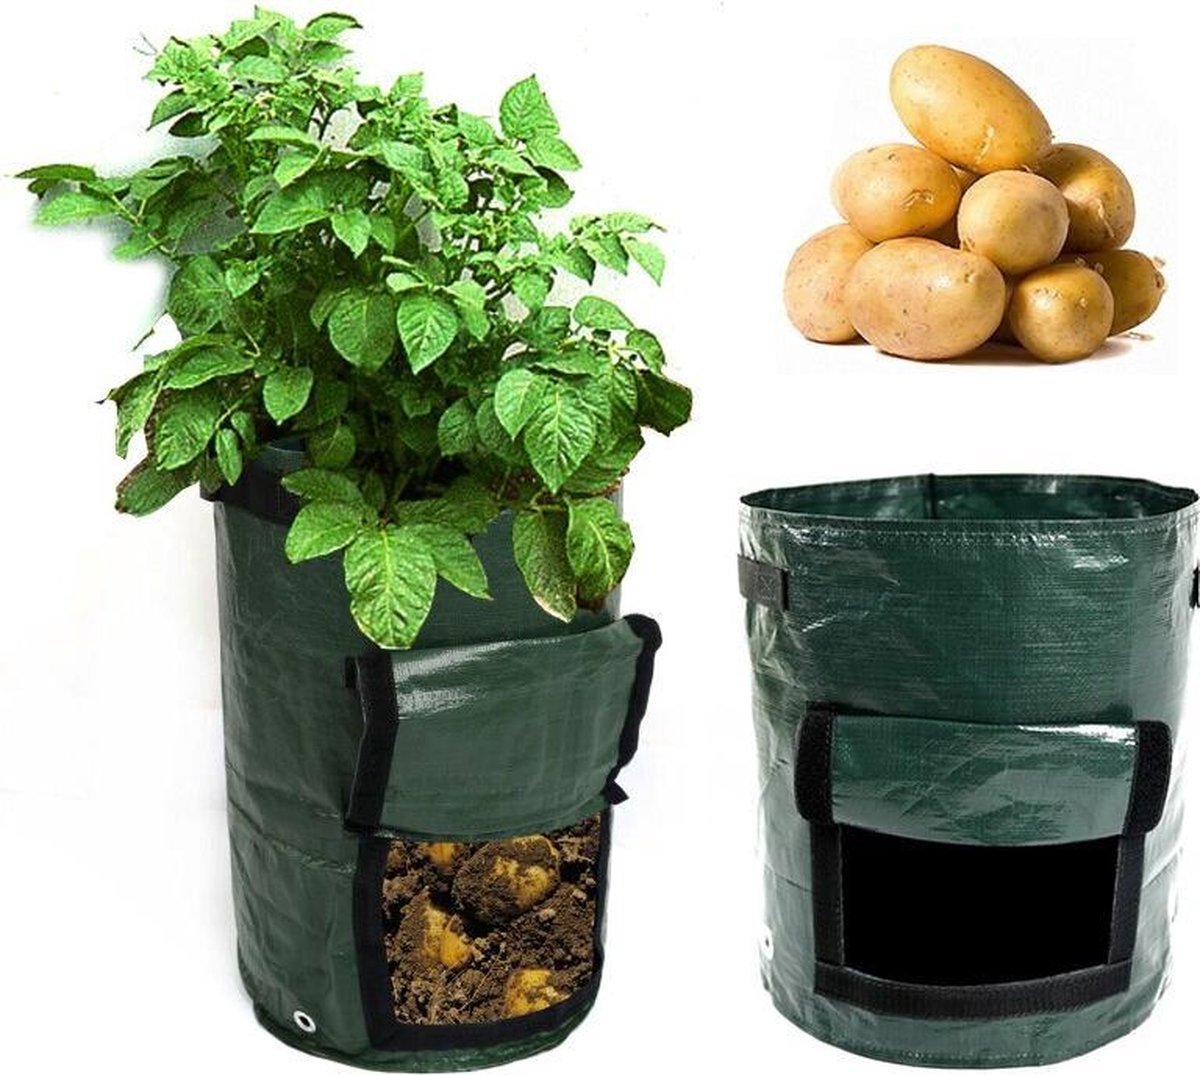 Winkrs - 2x Kweekzak Growbag Grow Bag voor aardappelen , groenten , planten 30x35CM - set groeizakken groen